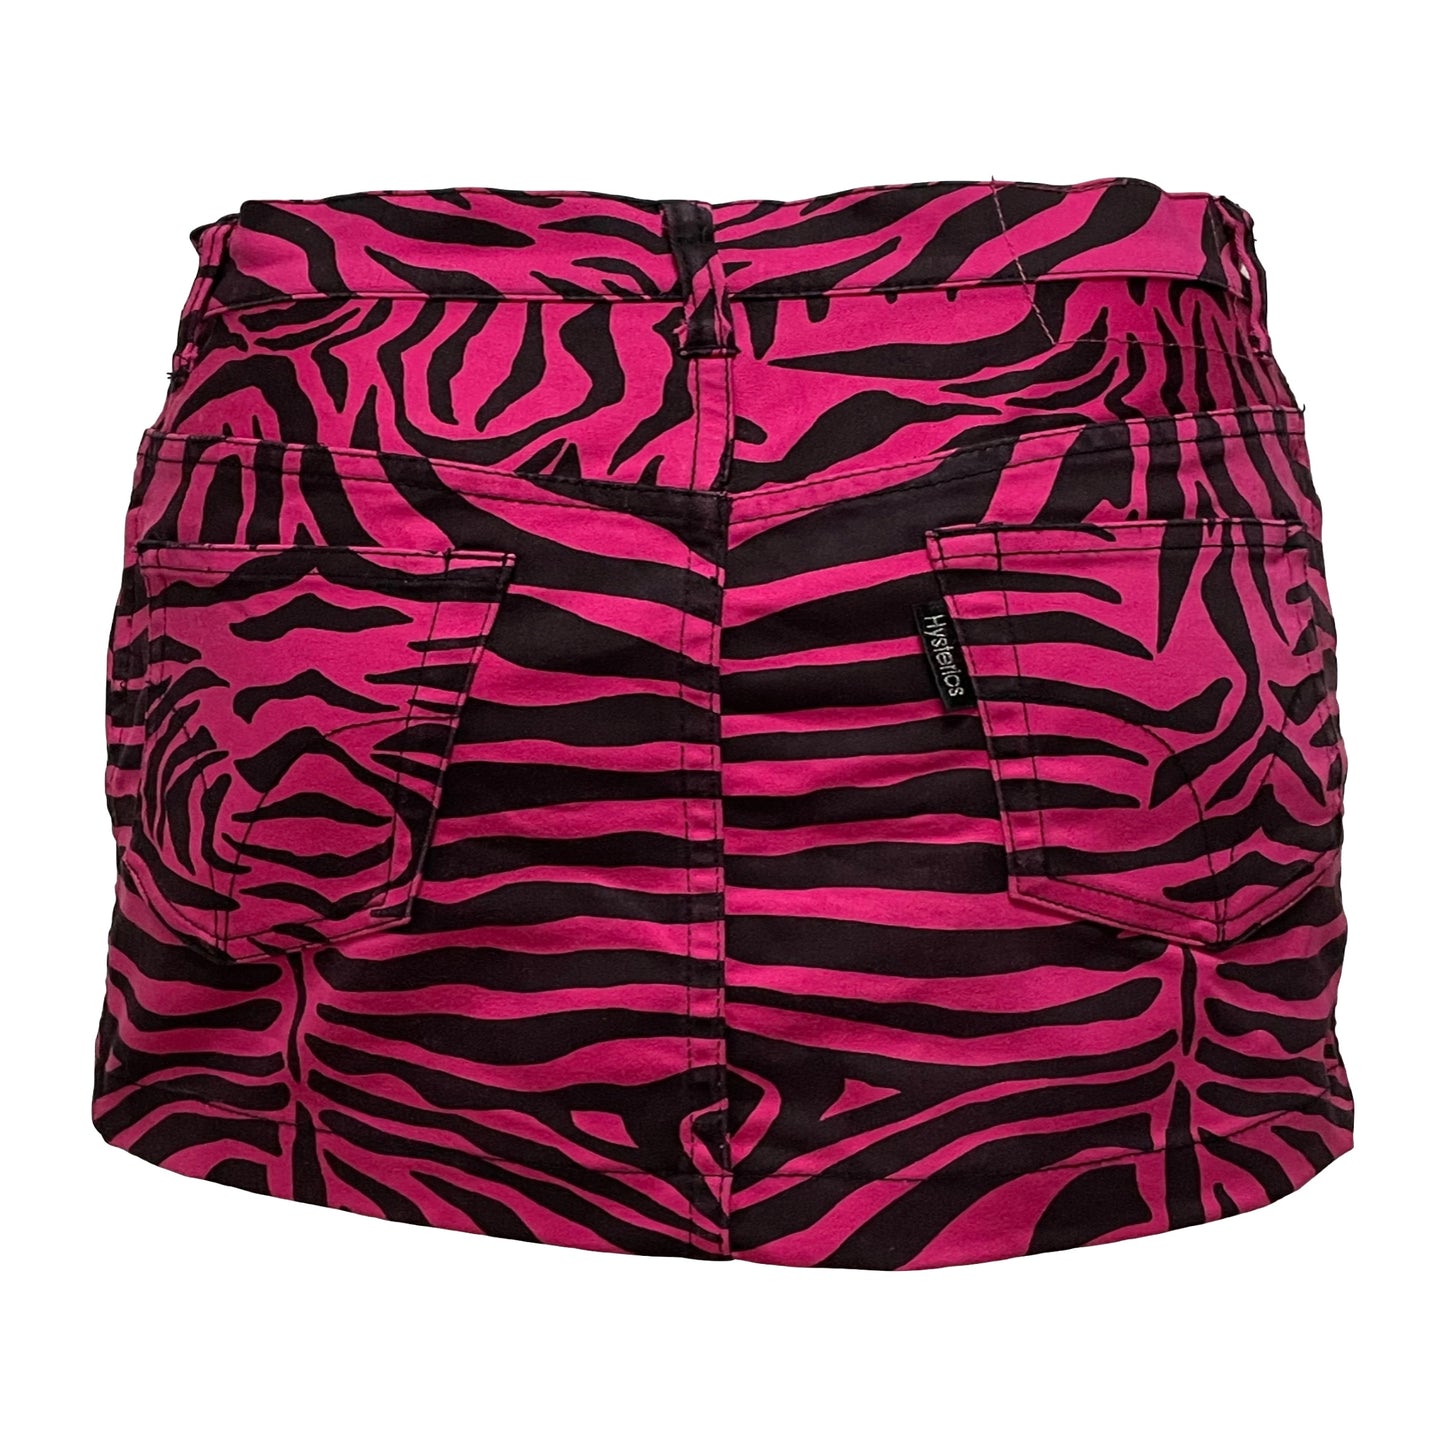 HYSTERICS Zebra Print Mini Skirt